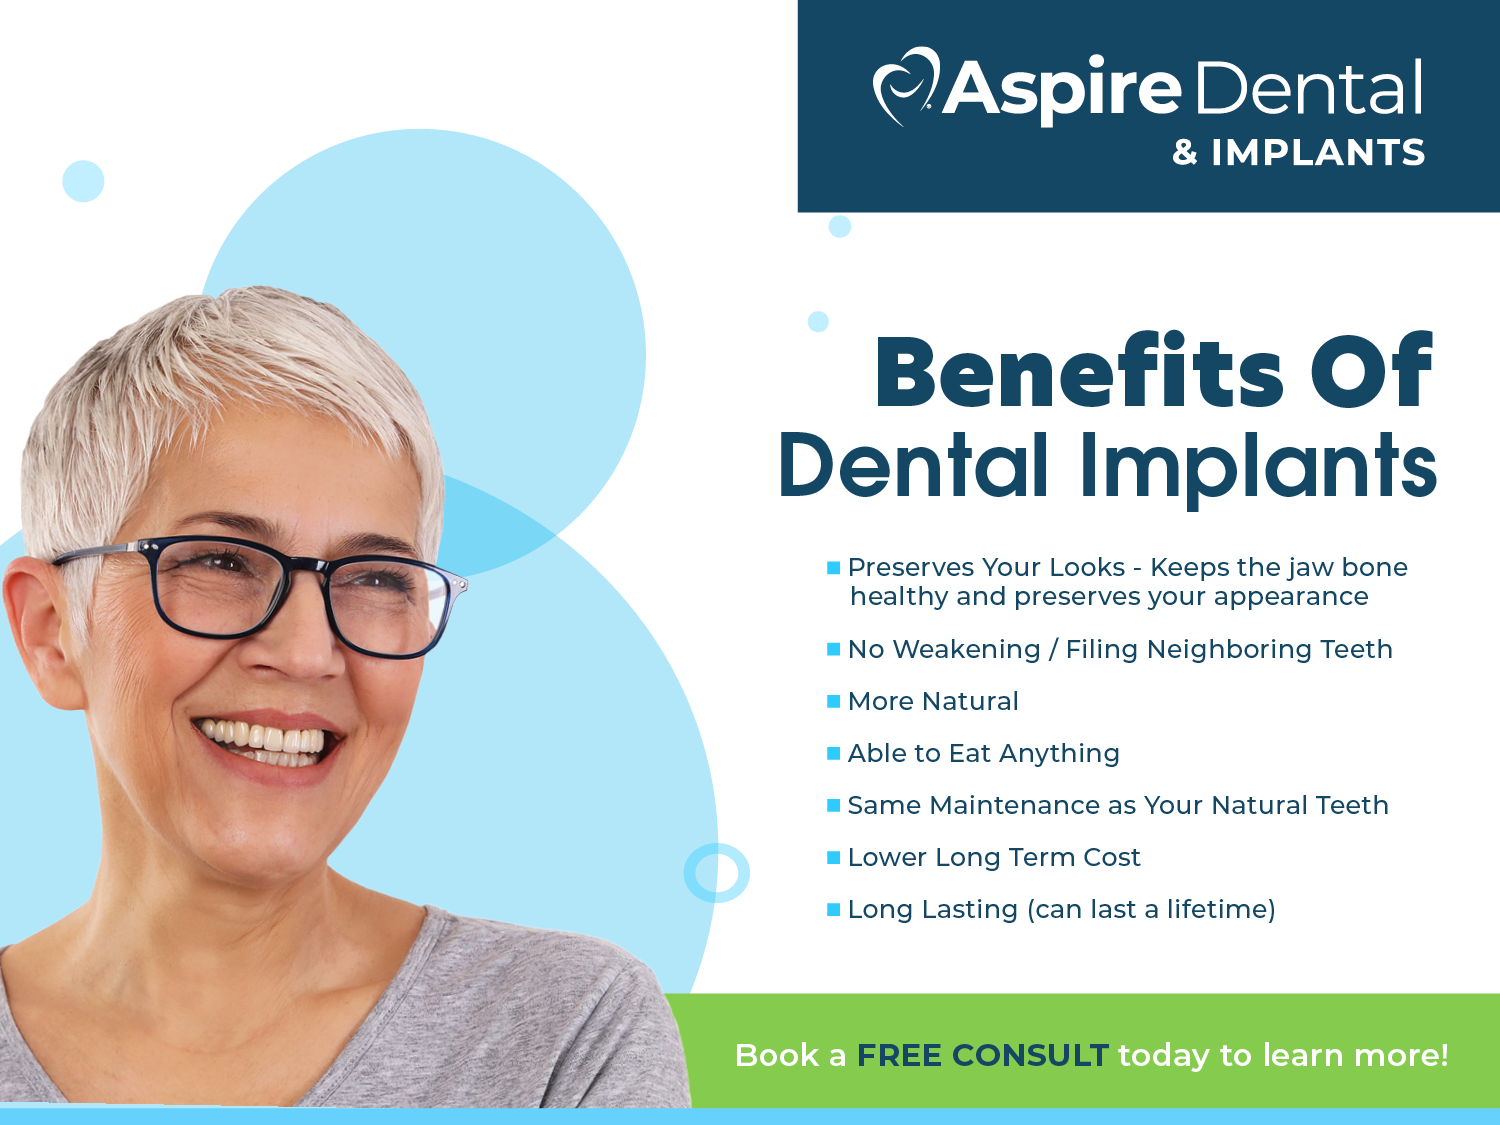 Let Aspire Dental & Implants in Chandler restore your smile!